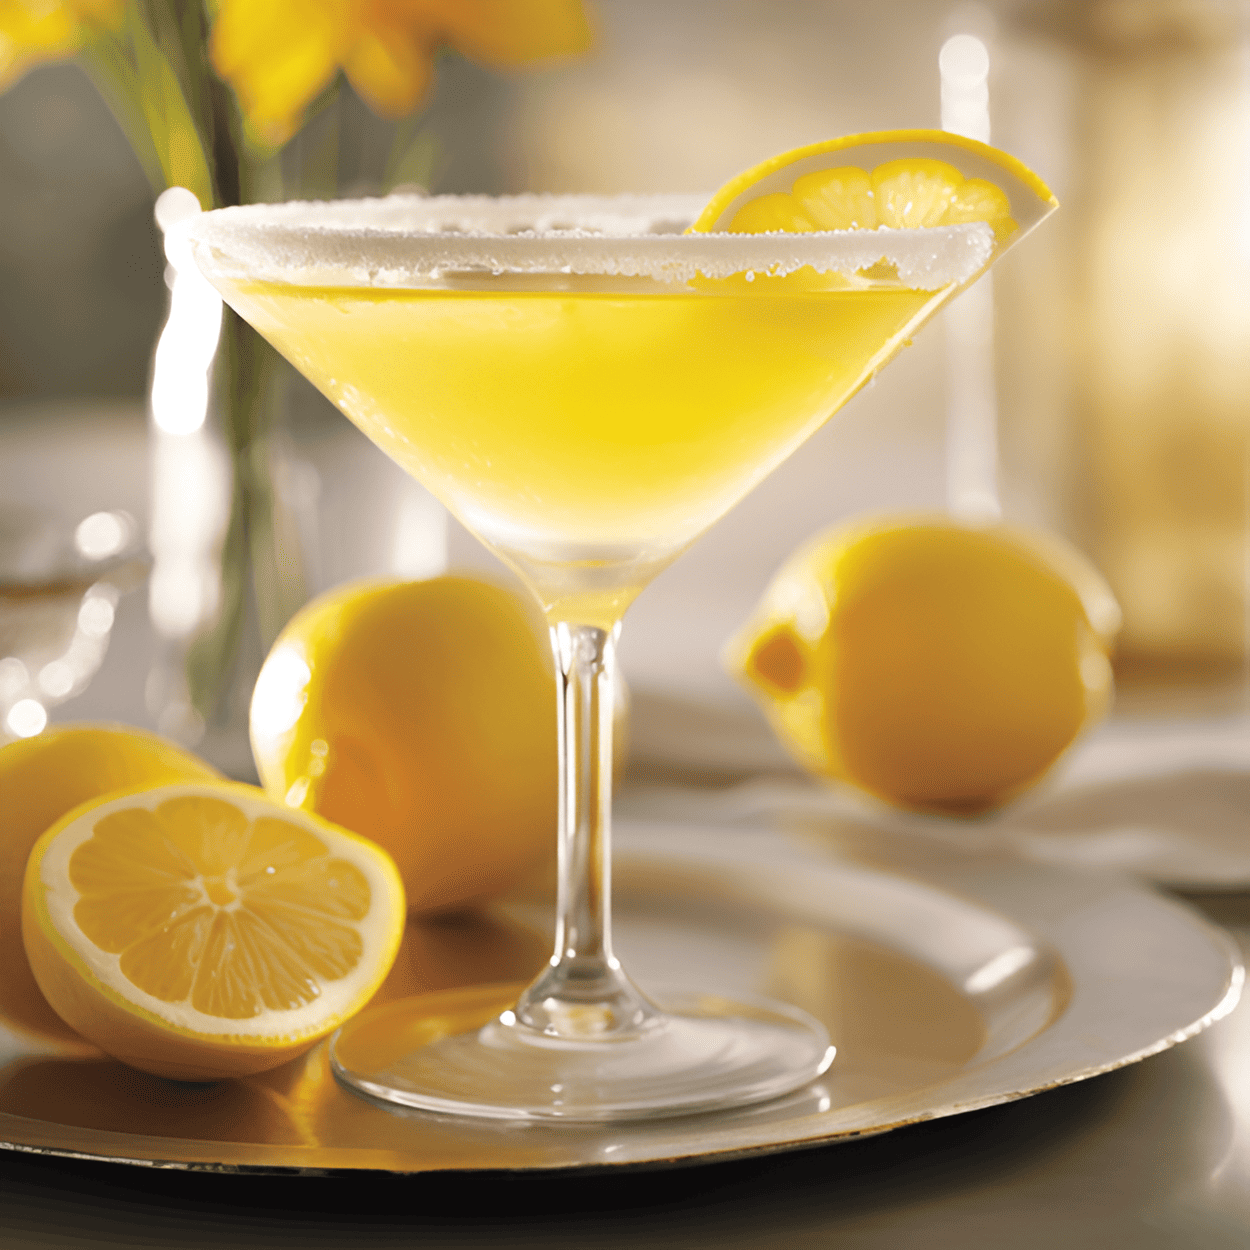 Lemon Drop Martini Cóctel Receta - El Lemon Drop Martini tiene un sabor brillante, vivaz y ligeramente dulce. La combinación de jugo de limón y jarabe simple crea un equilibrio perfecto entre lo agrio y lo dulce, mientras que el vodka agrega un toque suave y fuerte. El borde de azúcar agrega un toque extra de dulzura a cada sorbo.